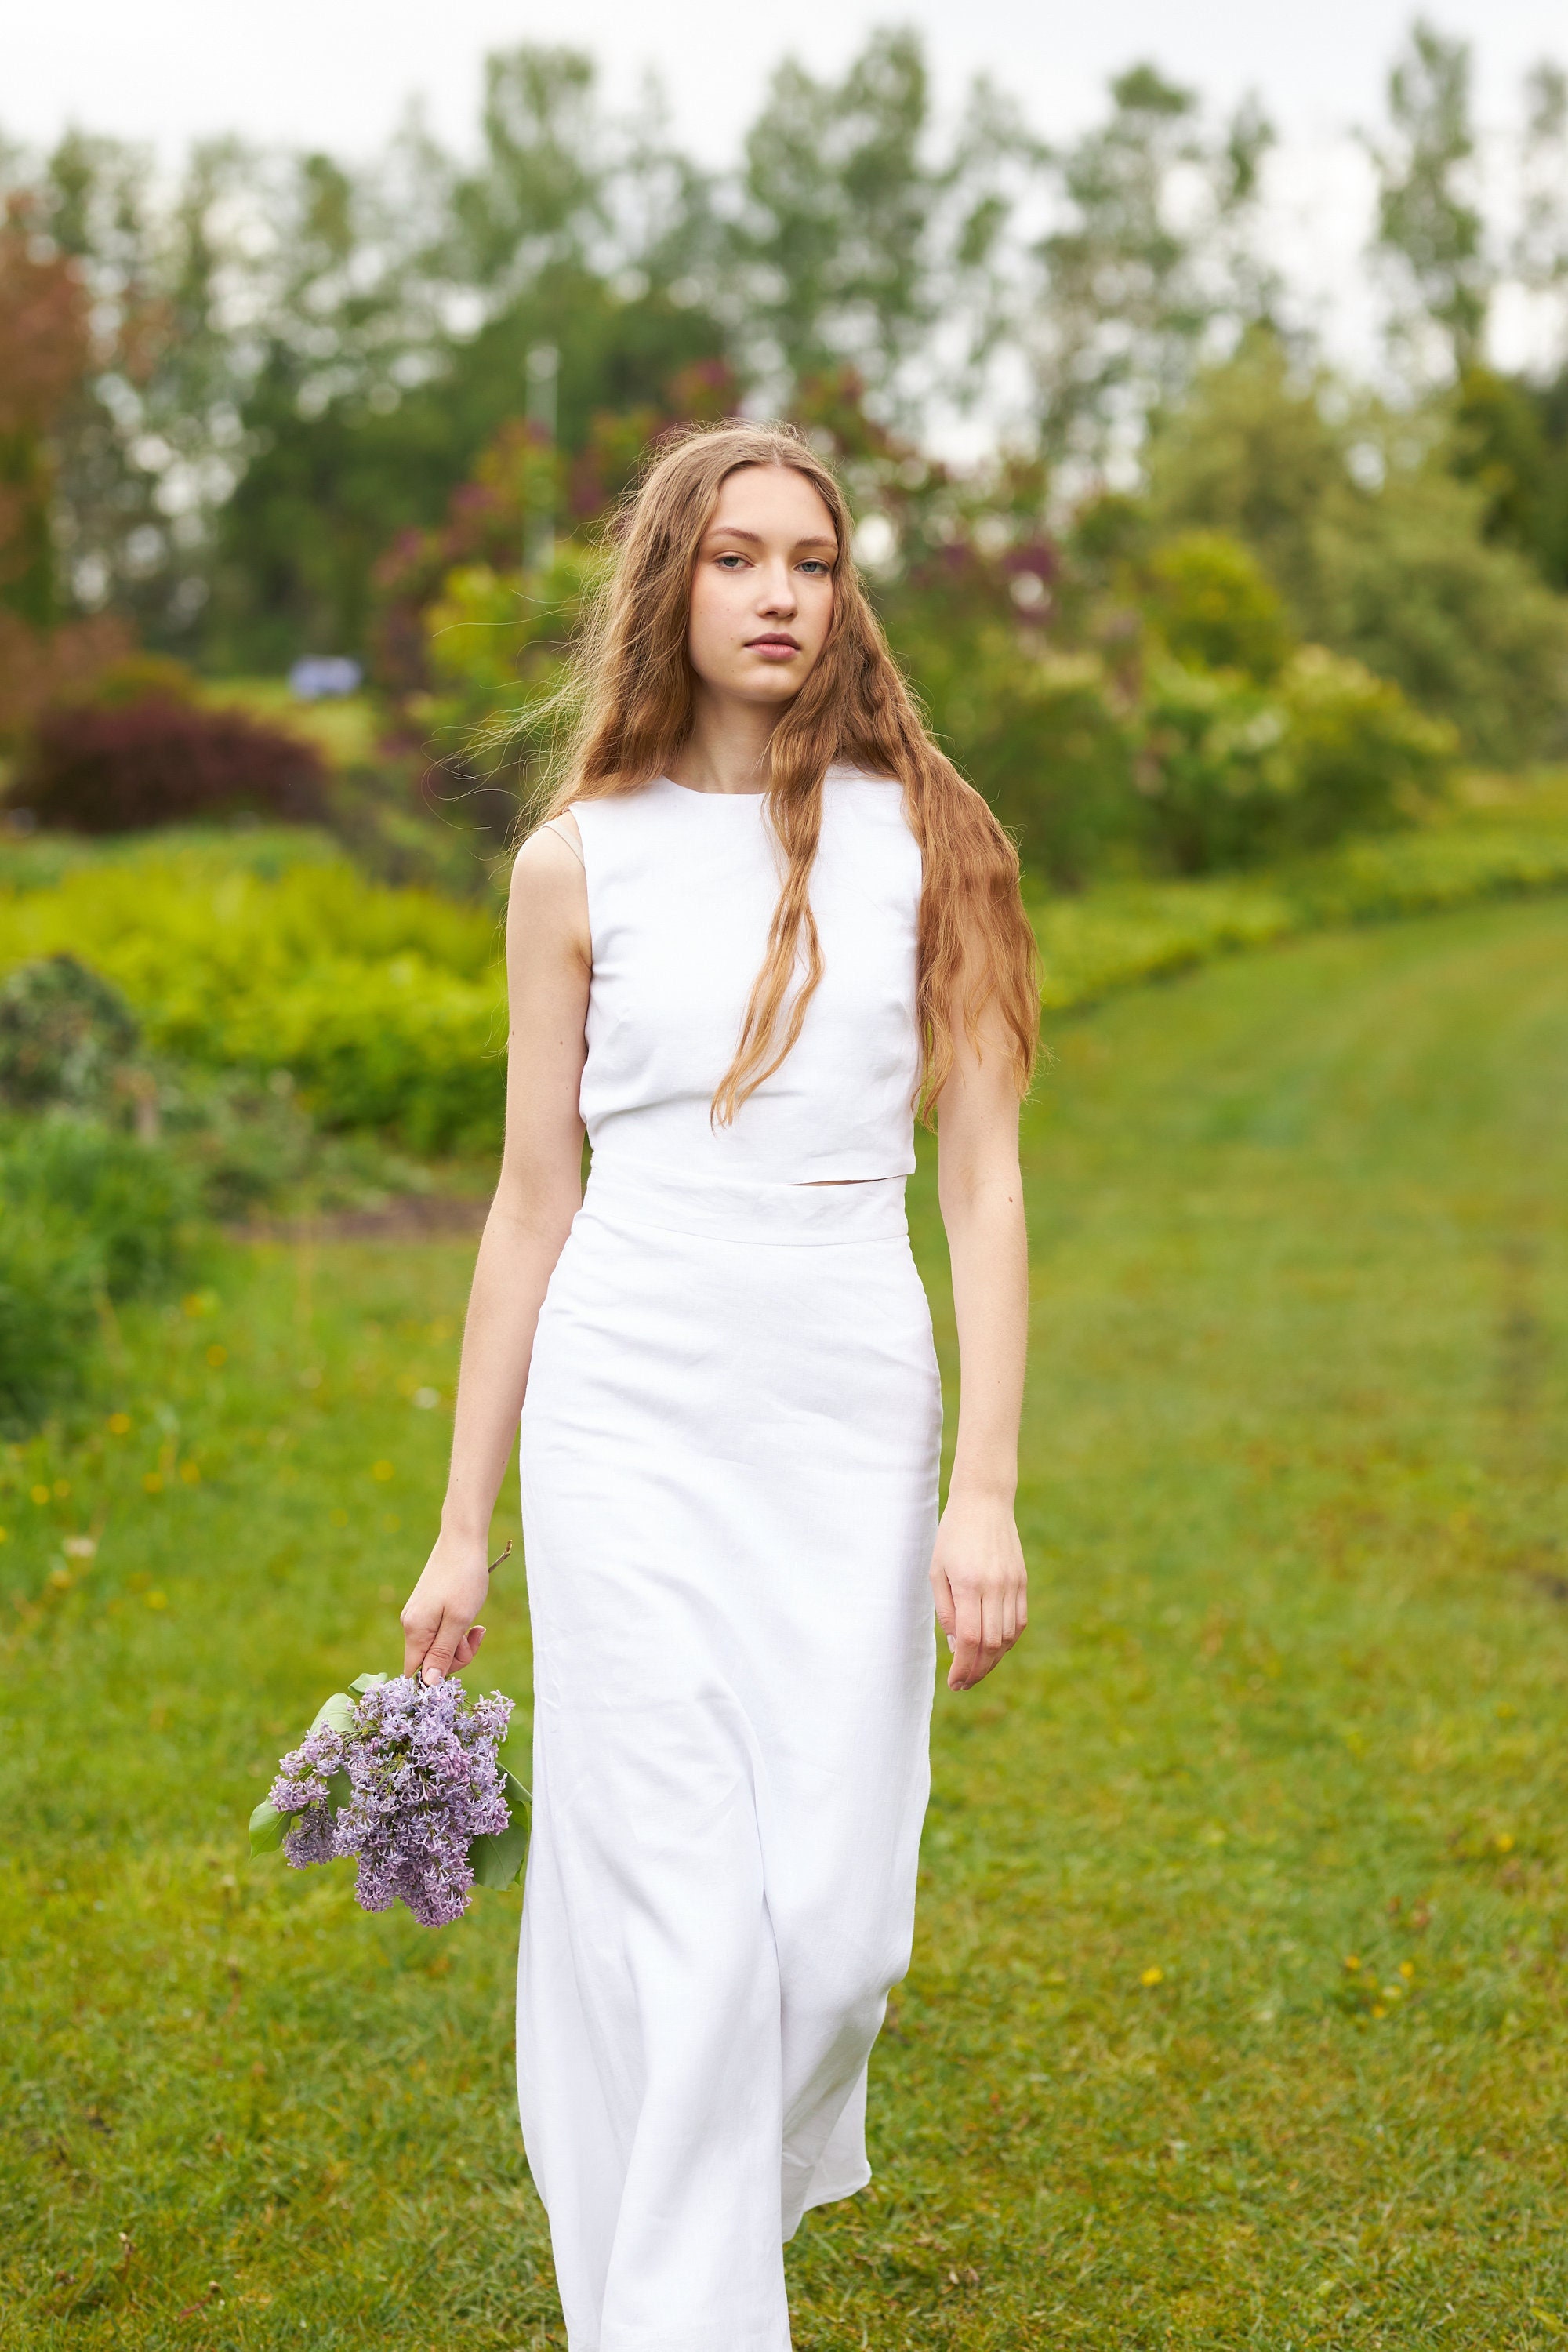 WINSUNNY White Cotton Linen Vest Top Long Skirt Two Piece Set